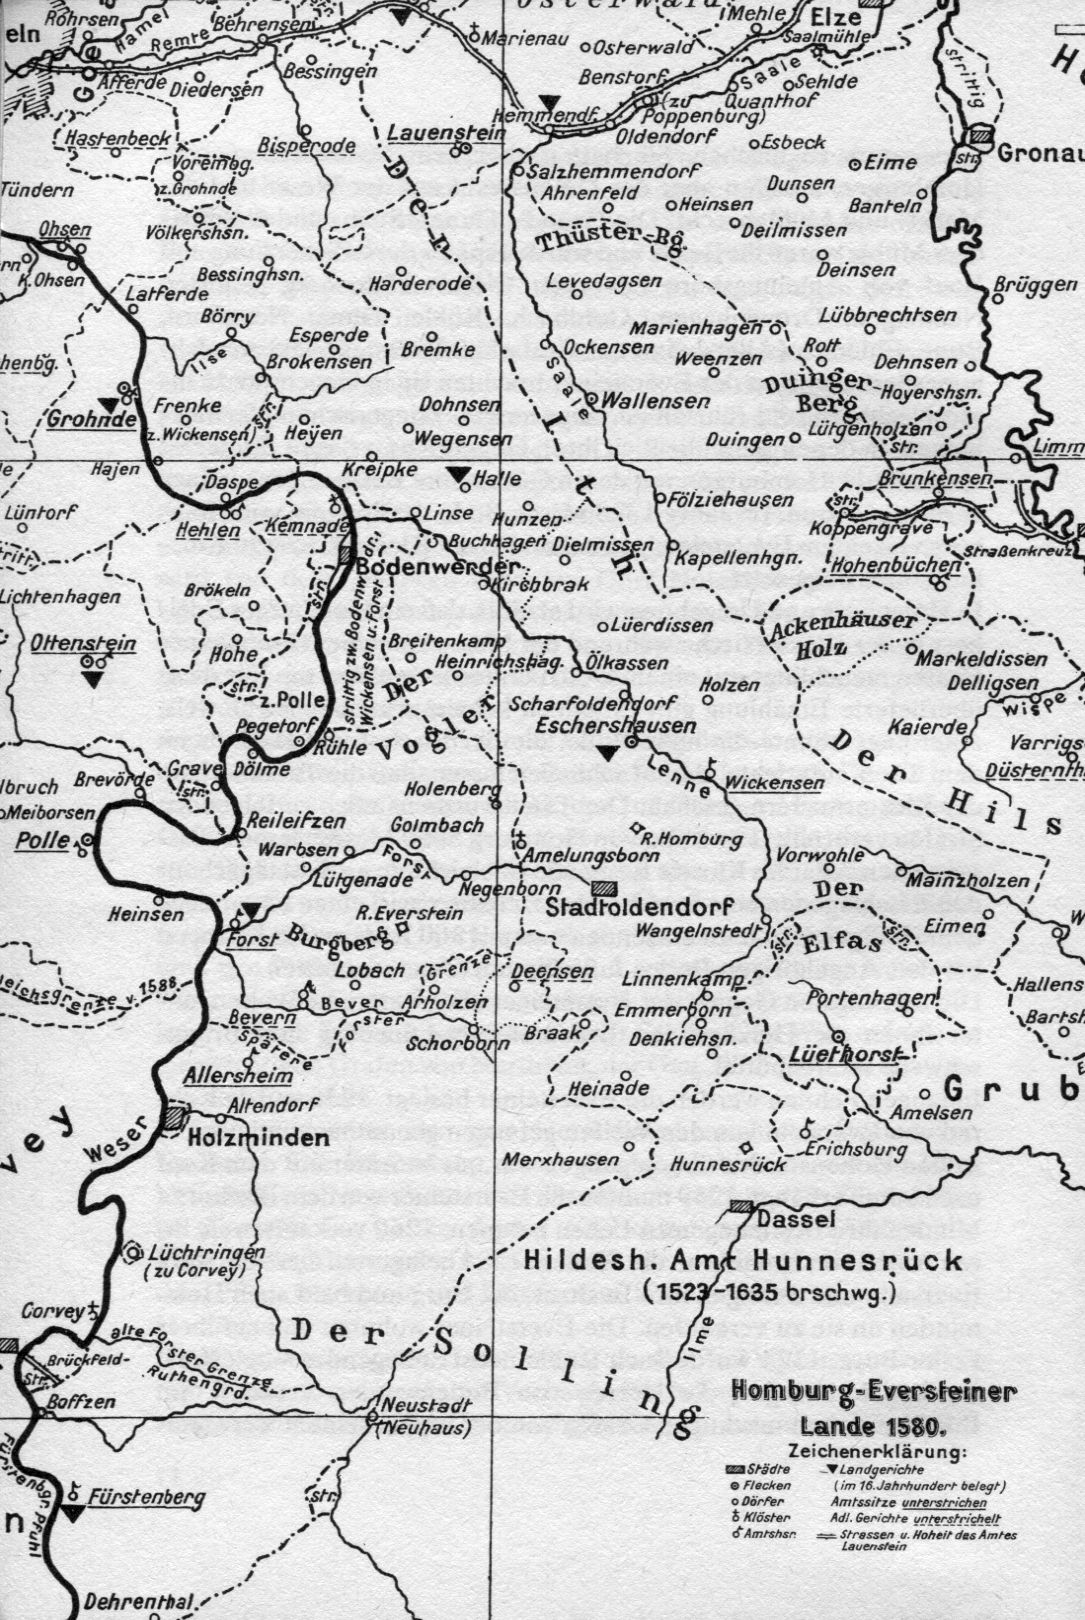 Karte der Homburg-Eversteiner Lande 1580